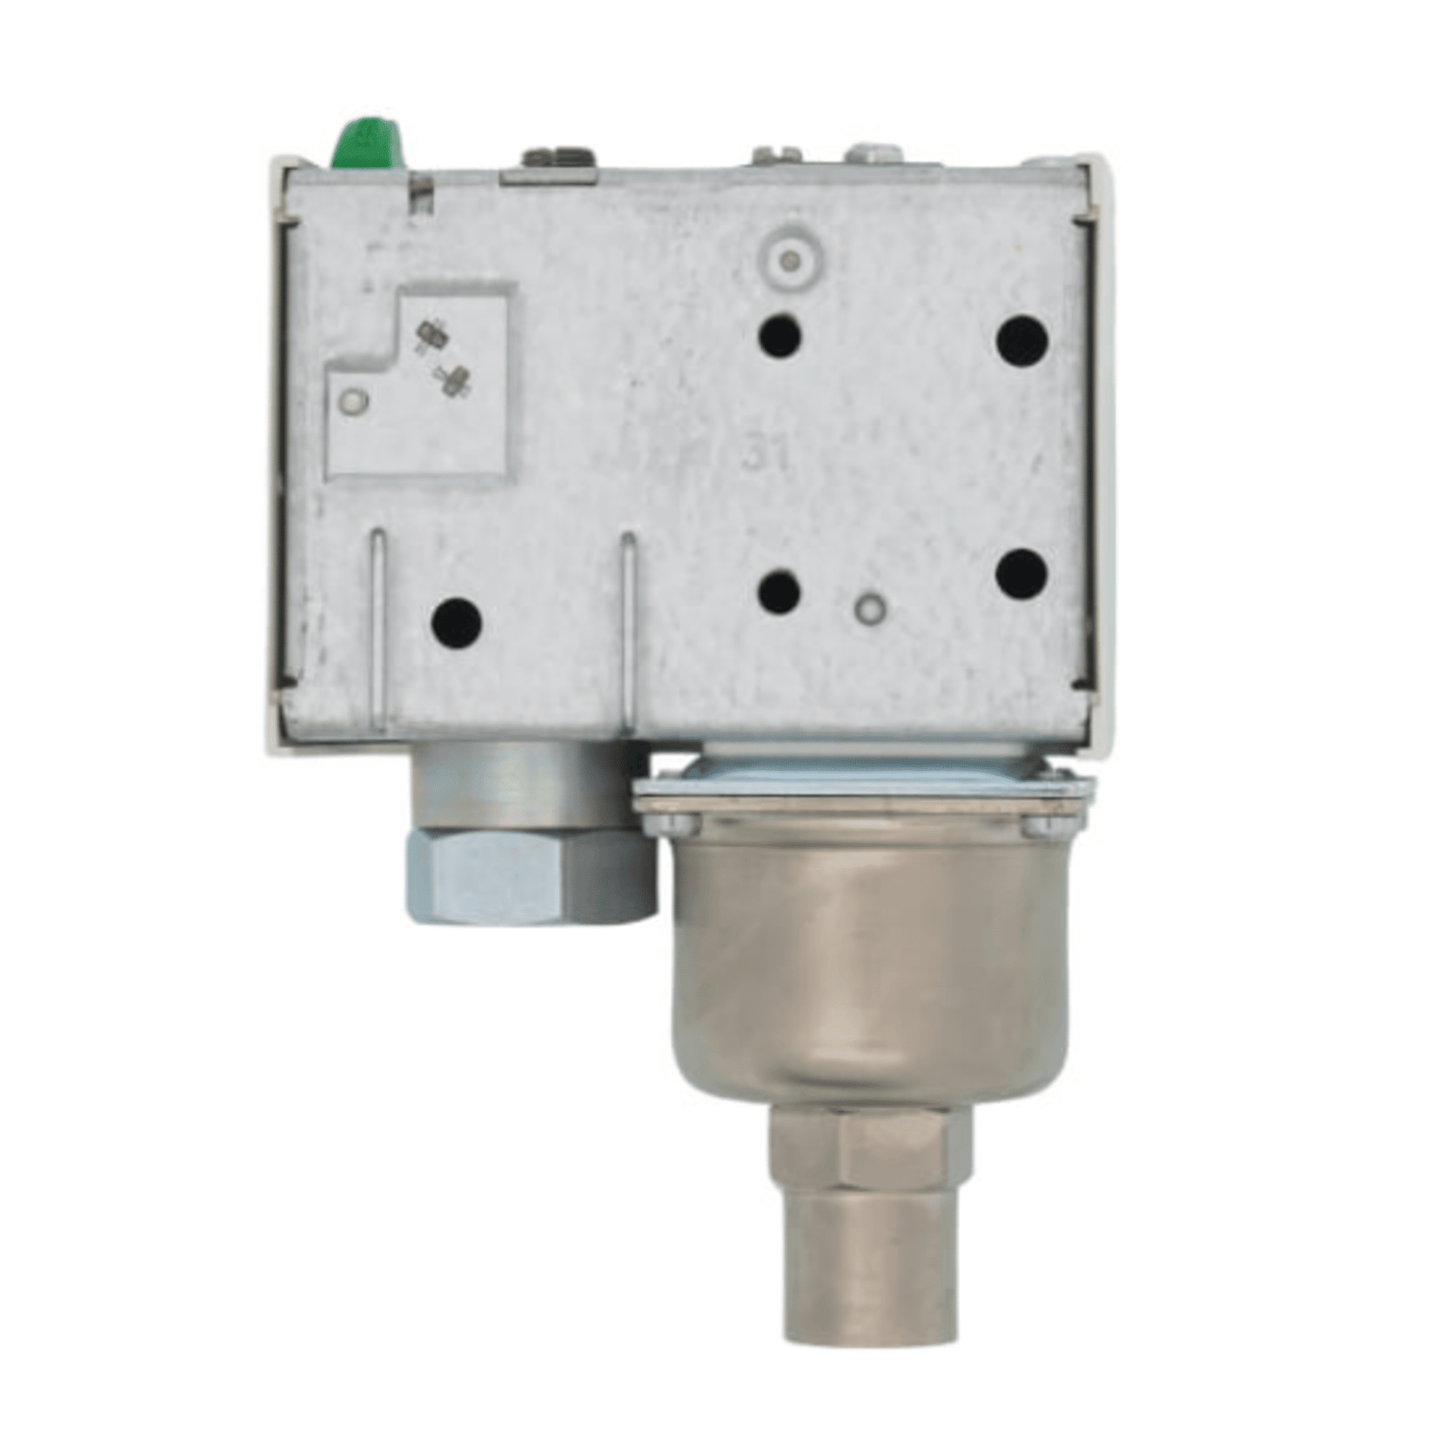 Danfoss - 060-214891 - KP-34 Manual Reset Pressure Switch